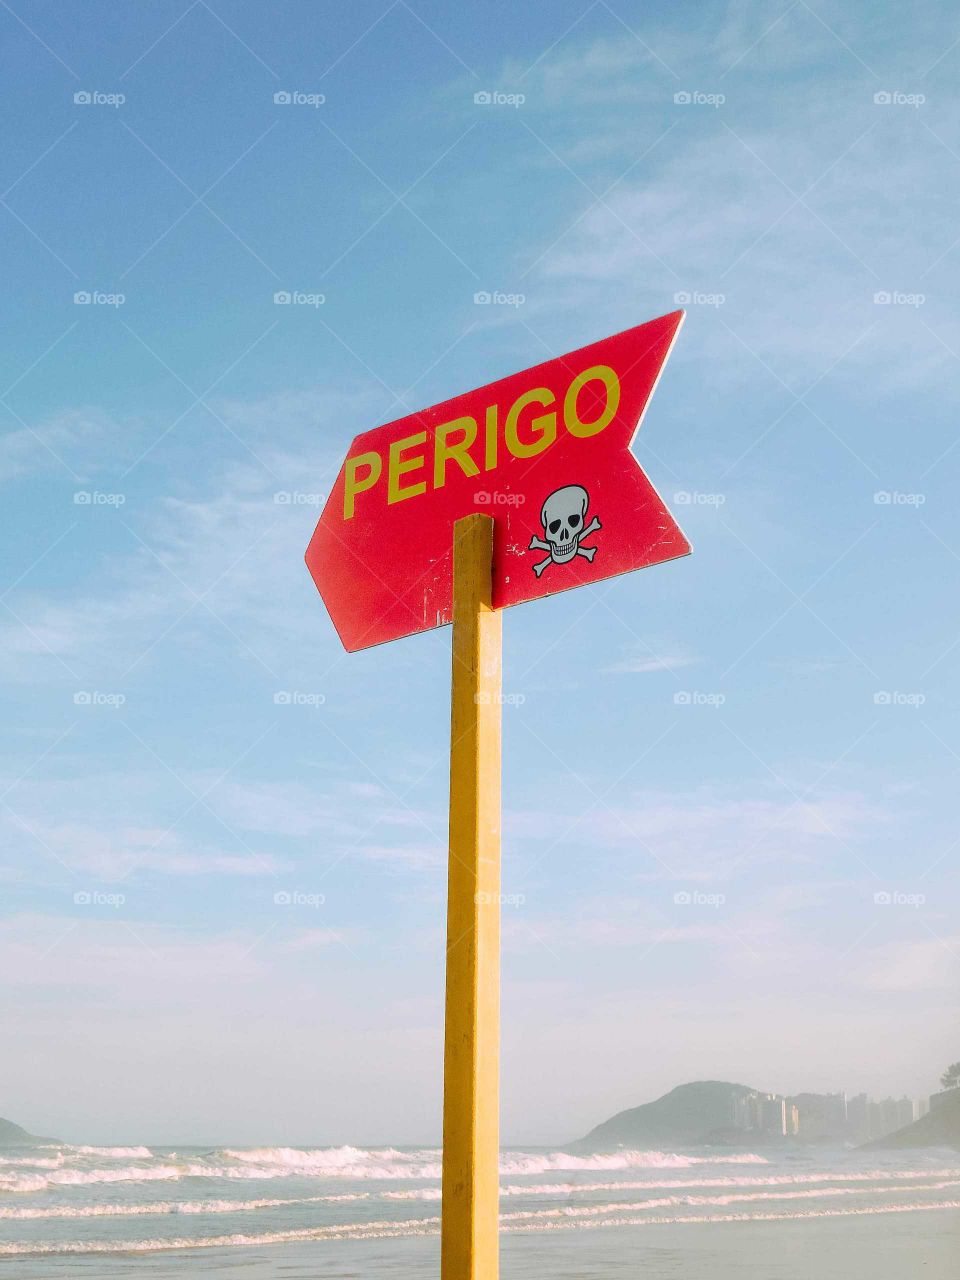 DANGER! SIGN! PLACA DE PERIGO! SKULL, RED SIGN ON BEACH, SANTO'S BRASIL. Lifeguard sign.